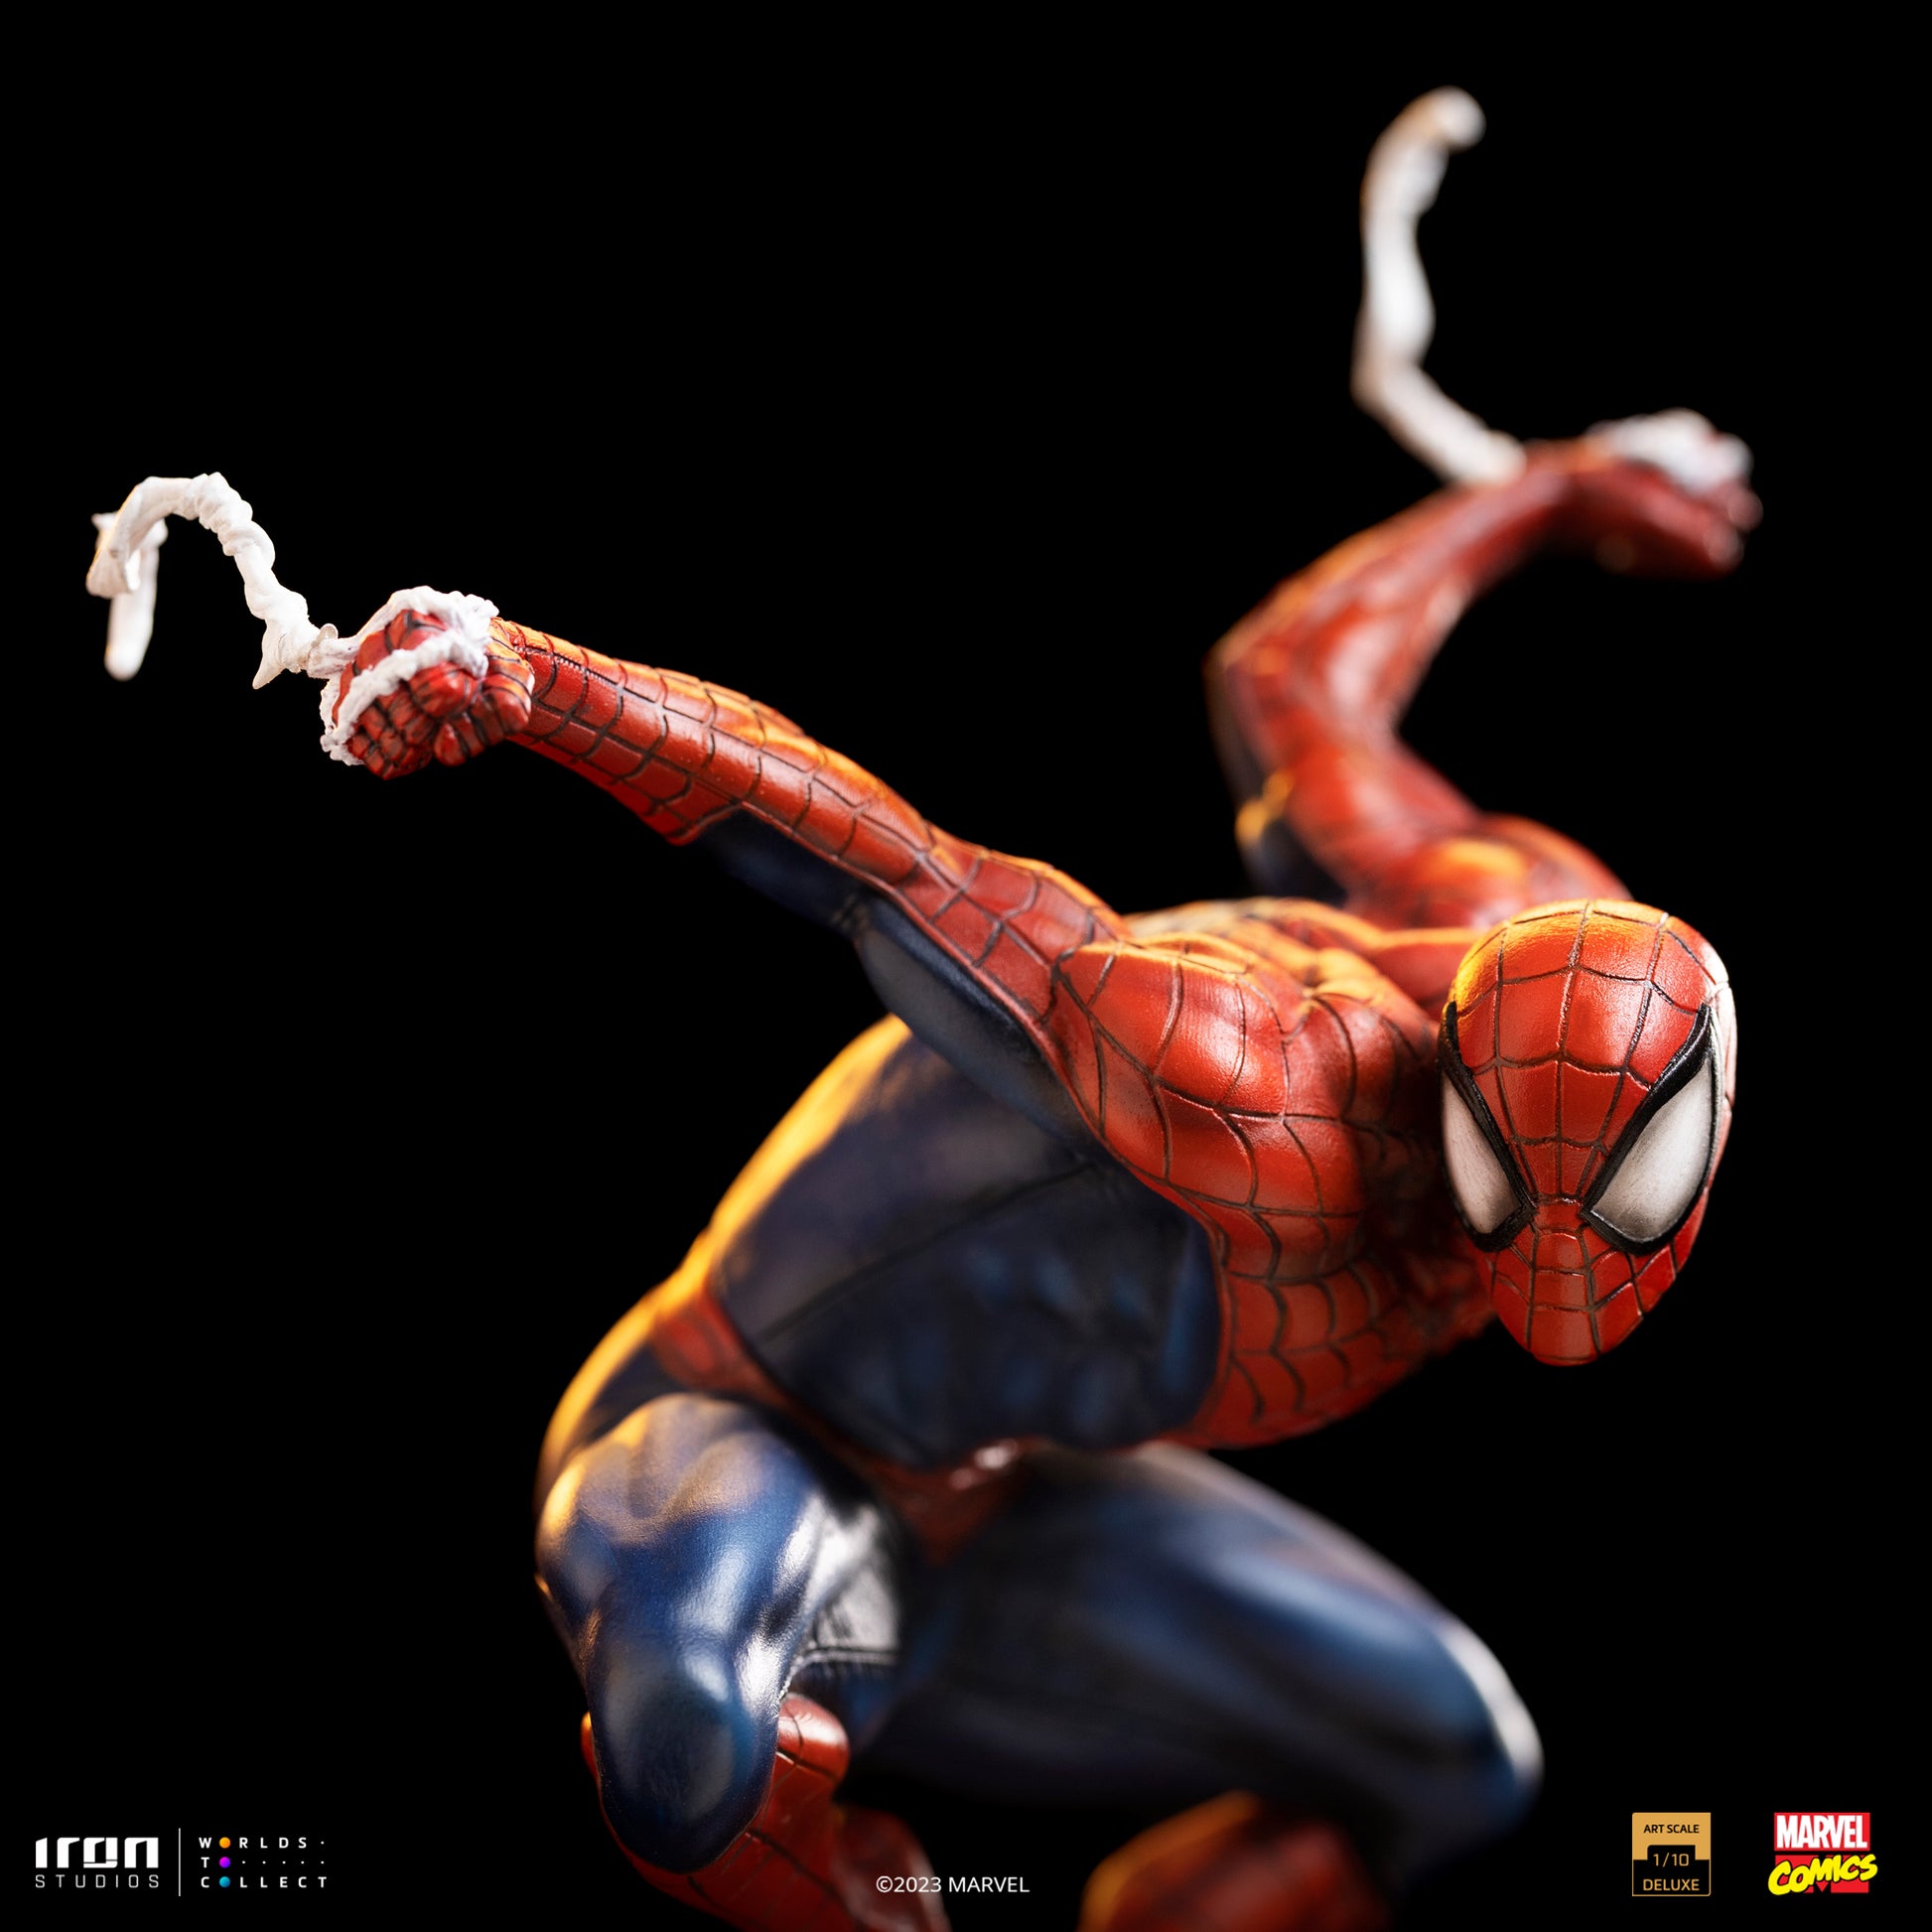 Figurine - Marvel - Spiderman 1/10 - MARVEL